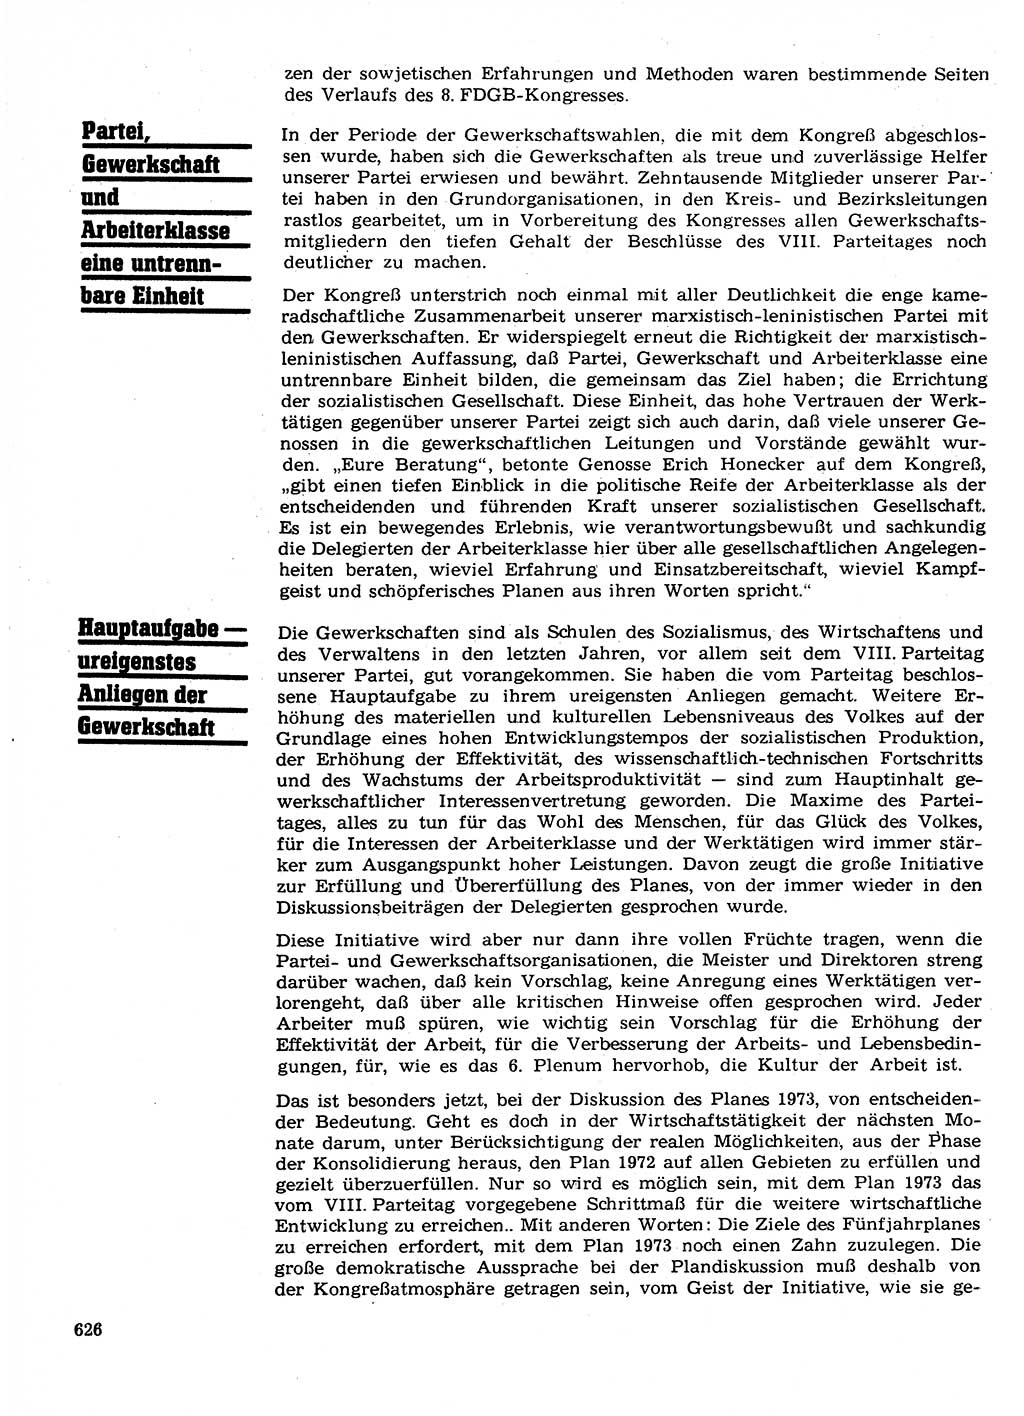 Neuer Weg (NW), Organ des Zentralkomitees (ZK) der SED (Sozialistische Einheitspartei Deutschlands) für Fragen des Parteilebens, 27. Jahrgang [Deutsche Demokratische Republik (DDR)] 1972, Seite 626 (NW ZK SED DDR 1972, S. 626)